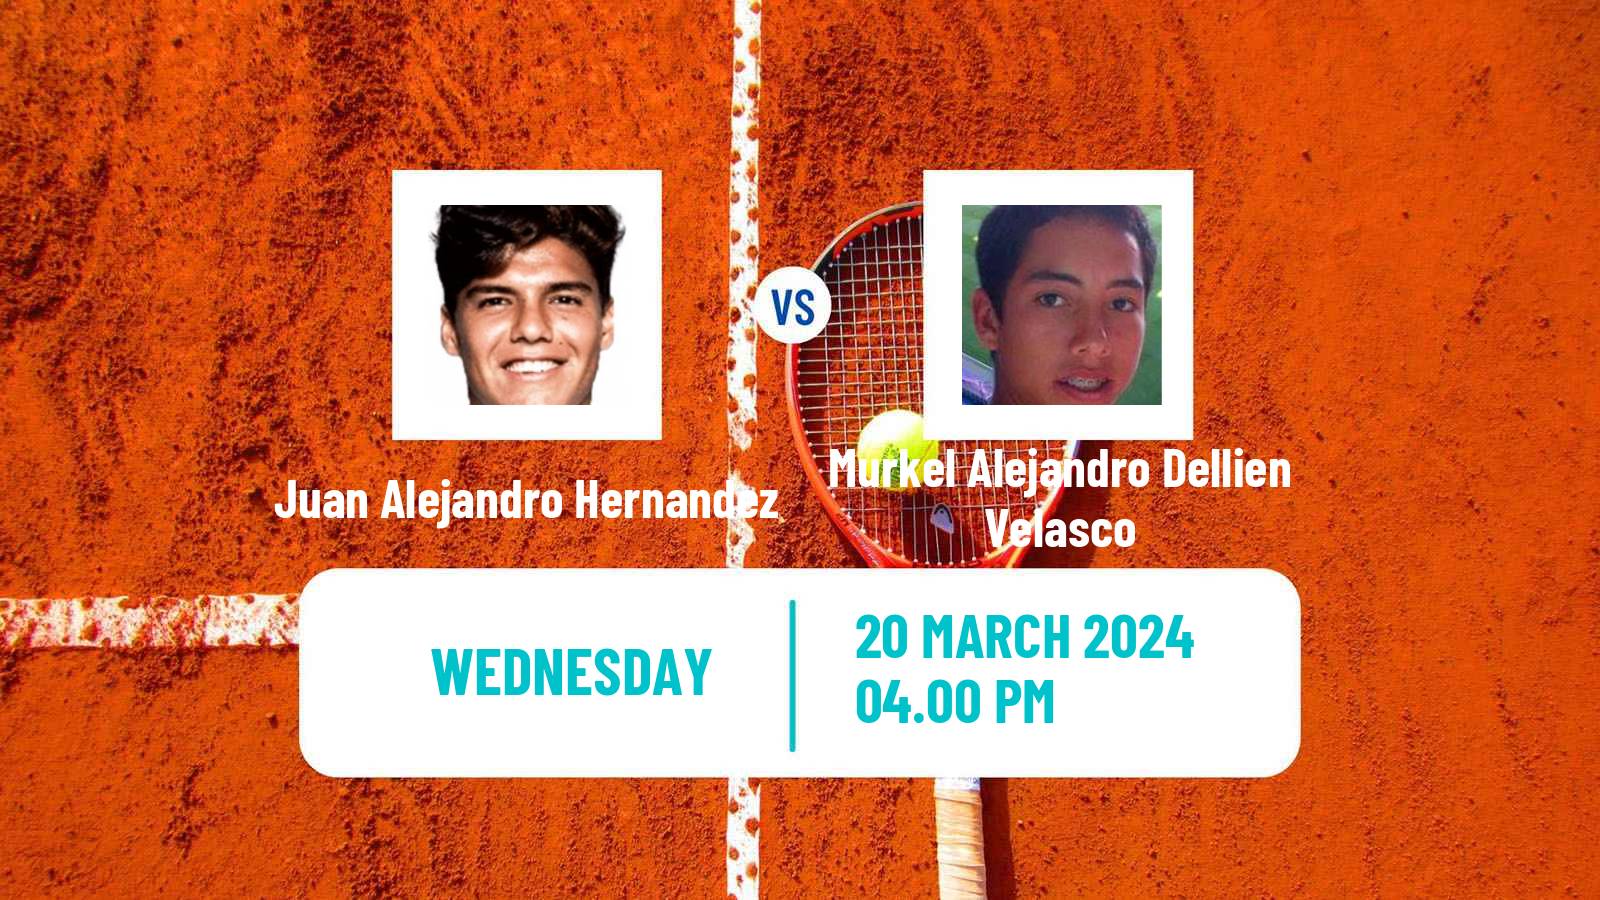 Tennis Merida Challenger Men Juan Alejandro Hernandez - Murkel Alejandro Dellien Velasco